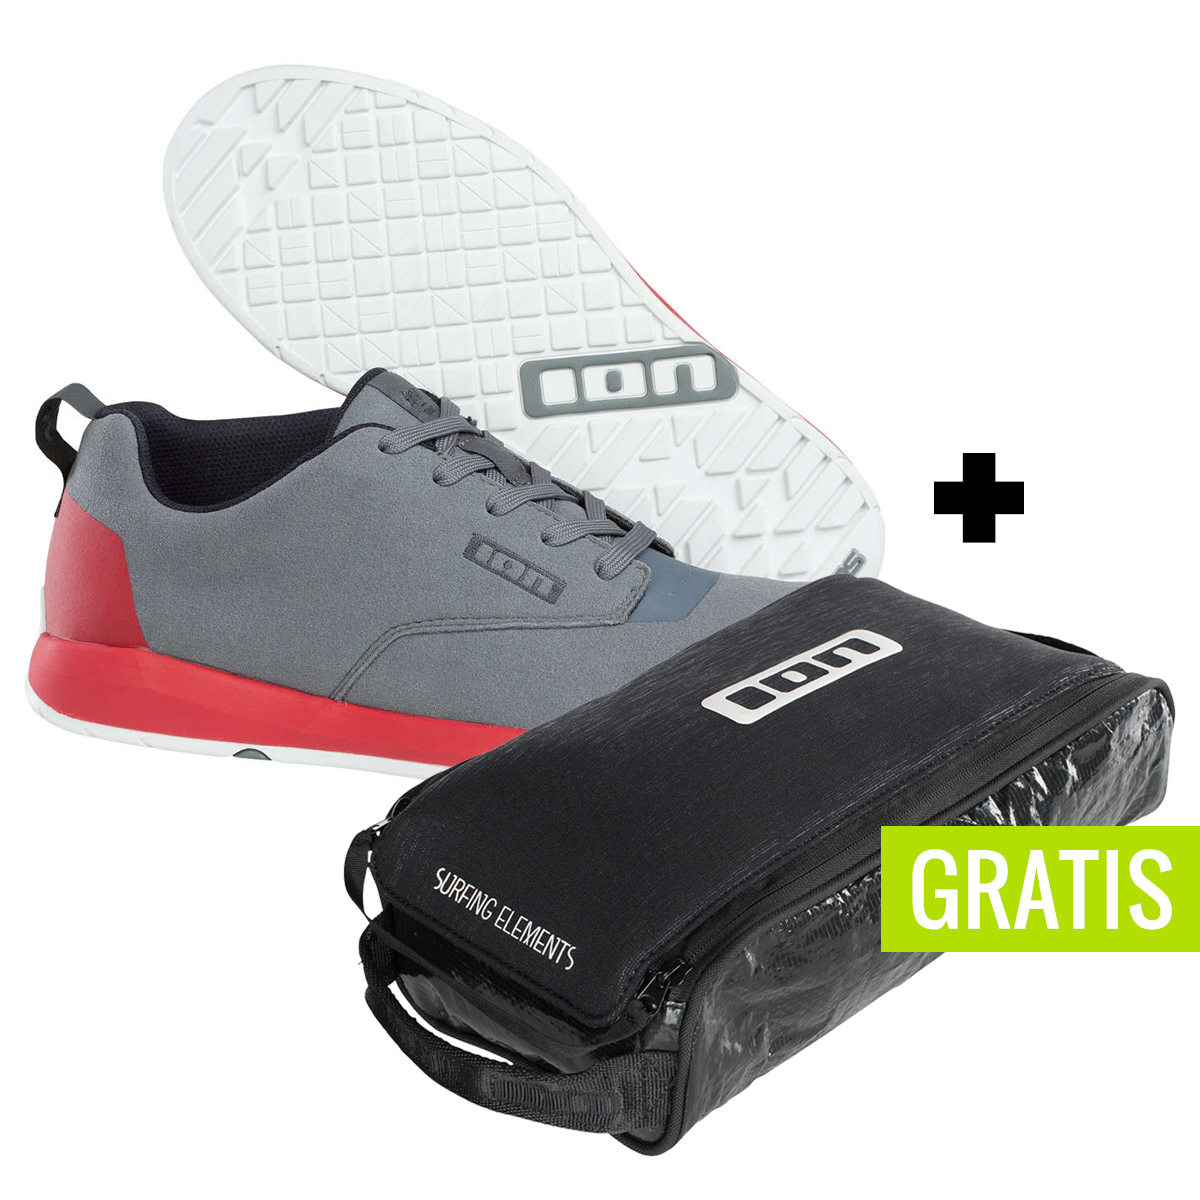 ION Chaussures VTT Raid Stone Grey + free shoe bag